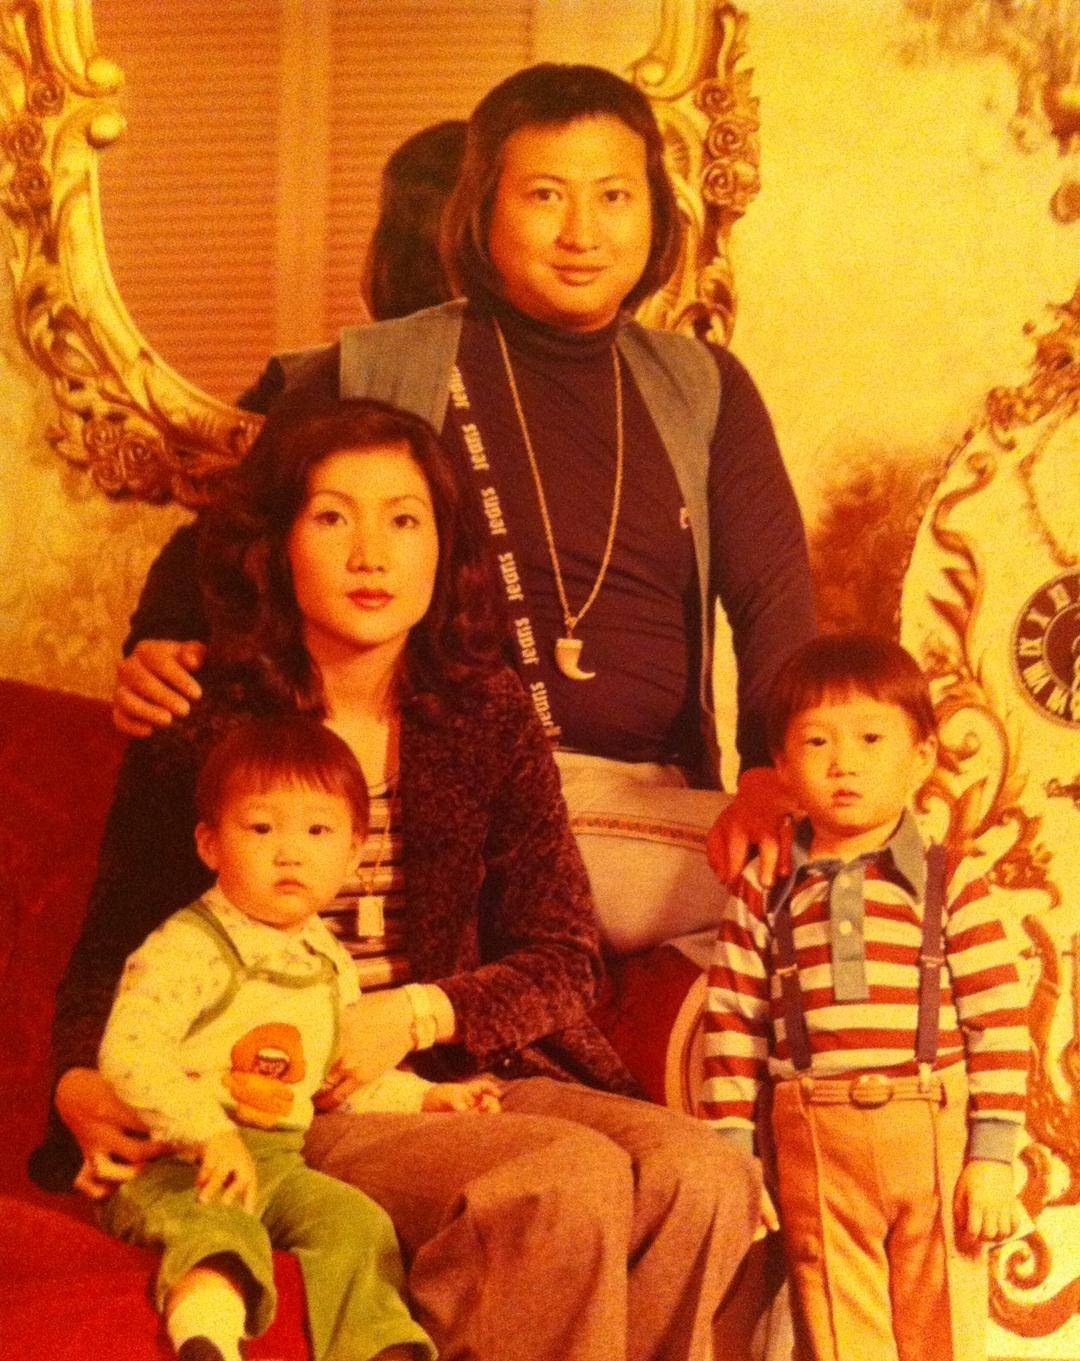 洪金宝的韩国前妻曹恩玉的旧照也被罕见曝光,她烫着卷发,五官精致气质